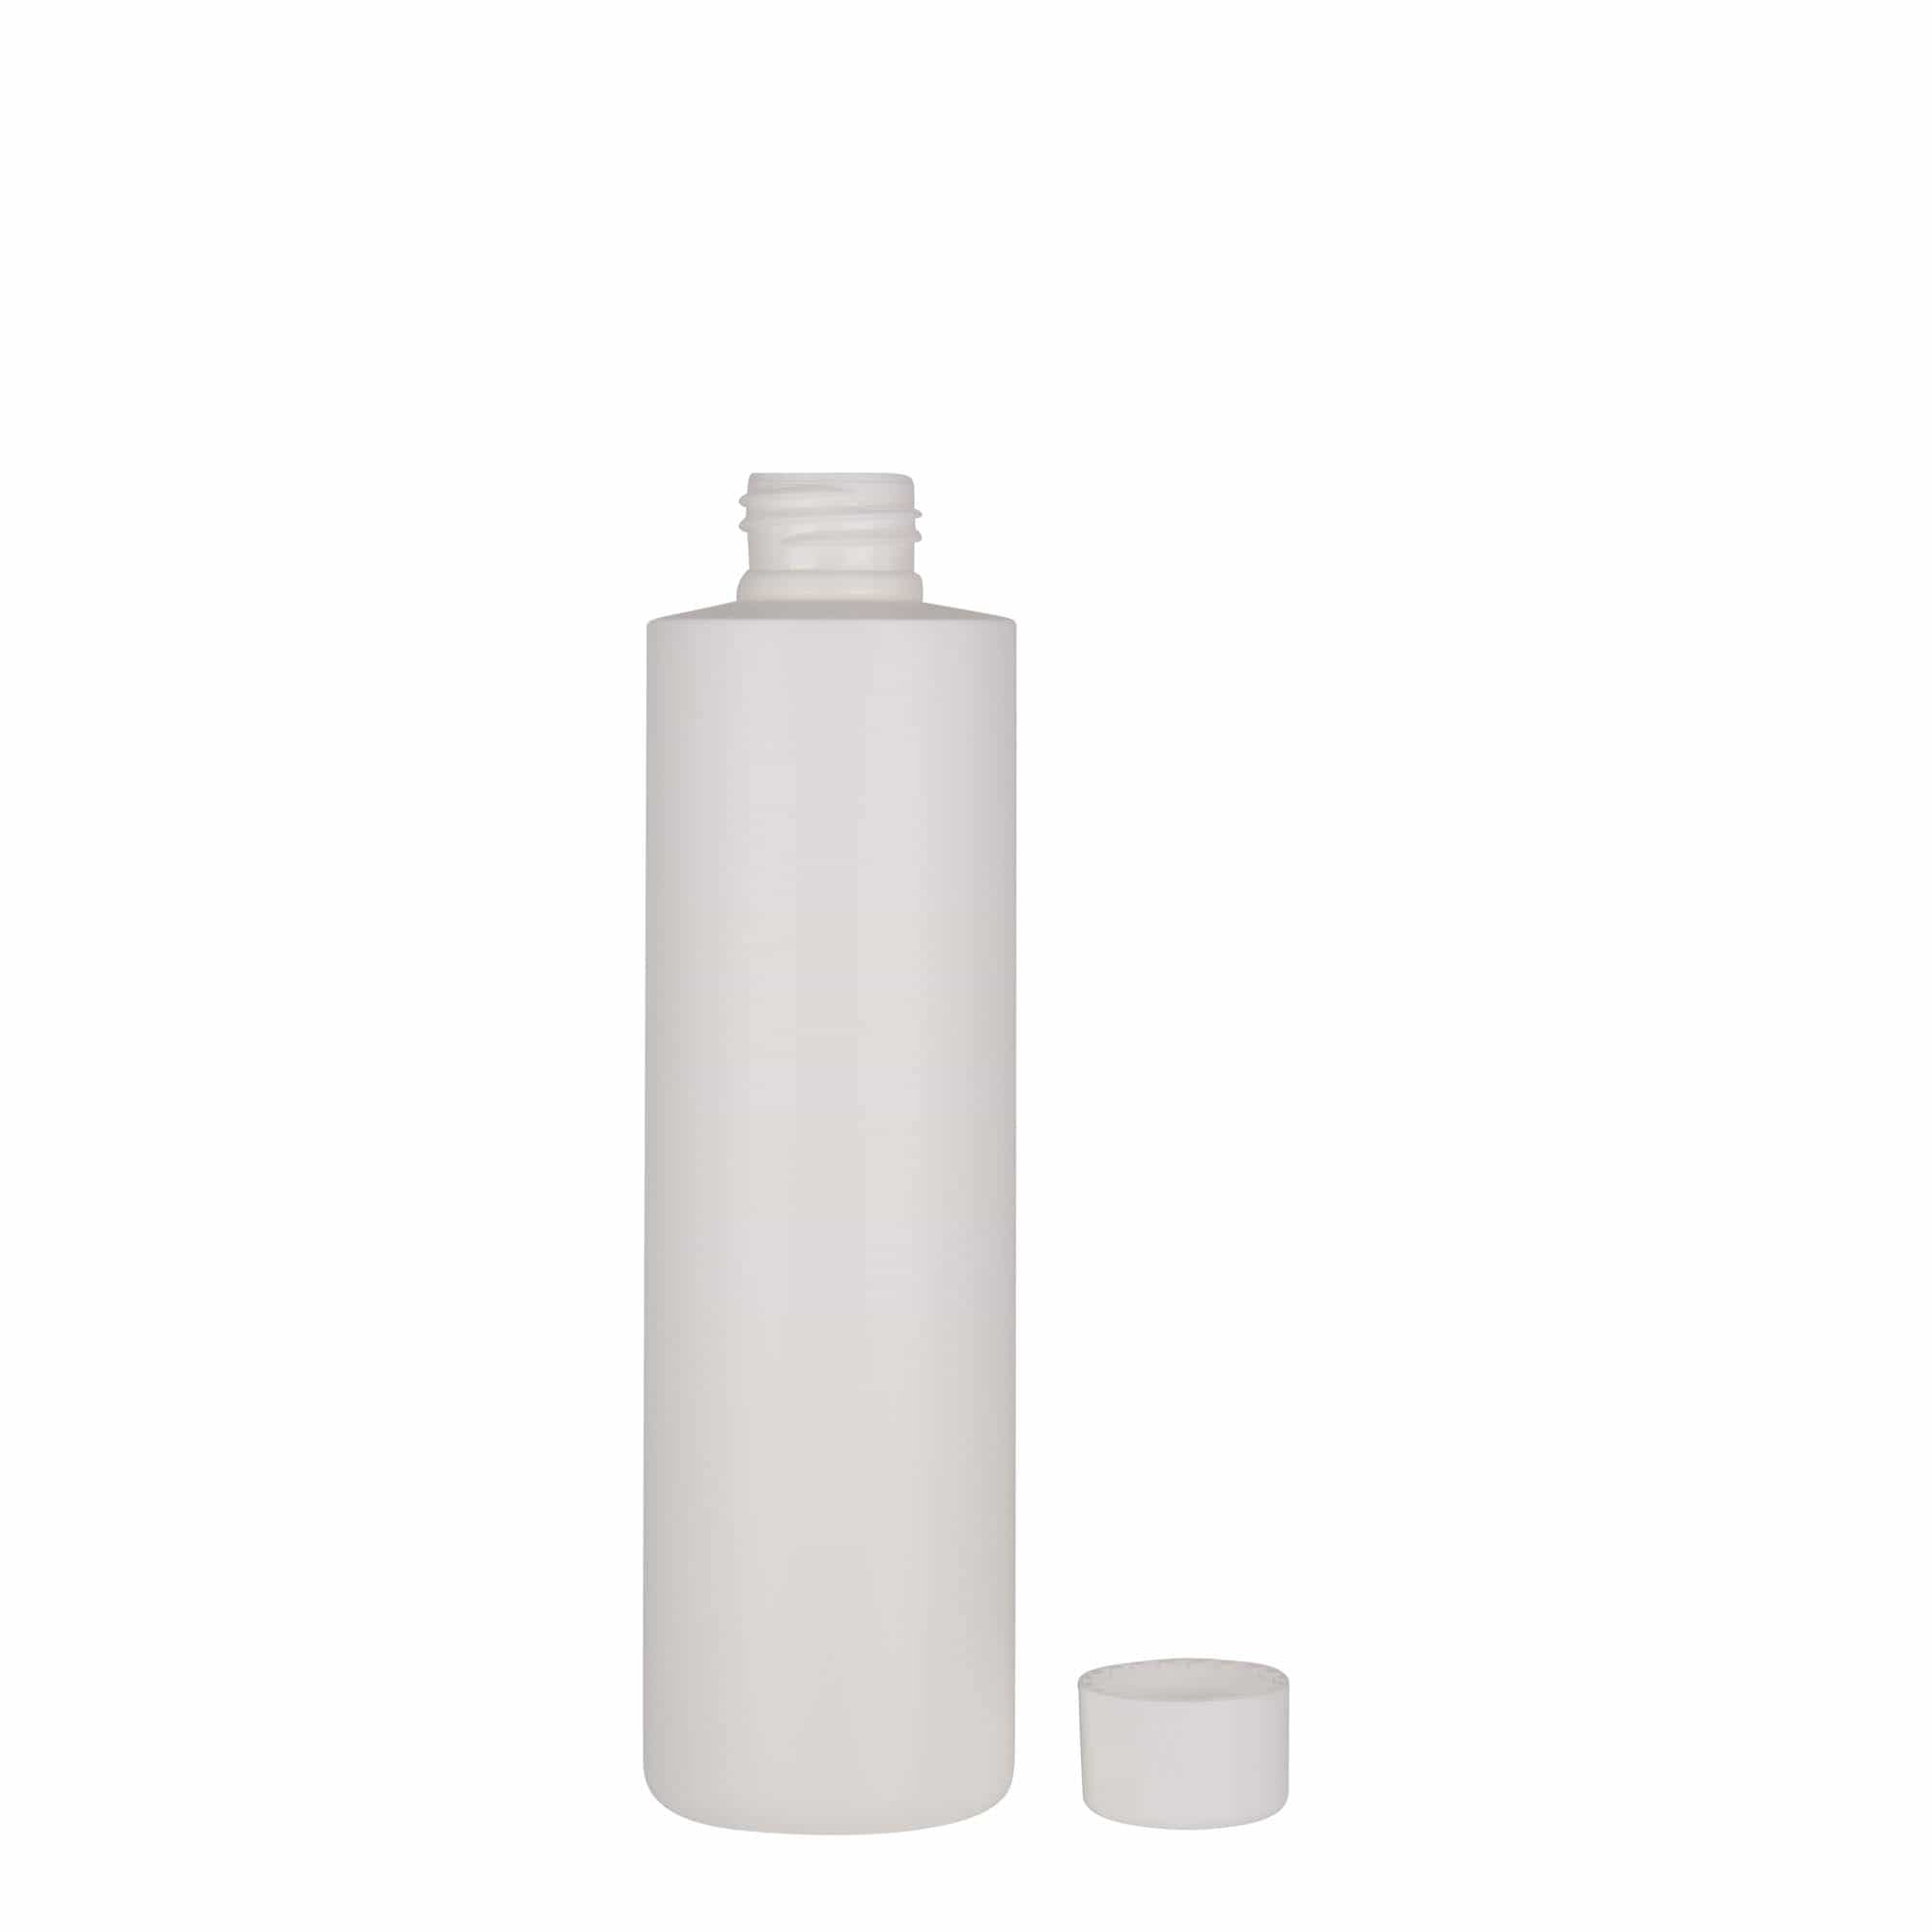 250 ml butelka z tworzywa sztucznego 'Pipe', Green HDPE, kolor biały, zamknięcie: GPI 24/410